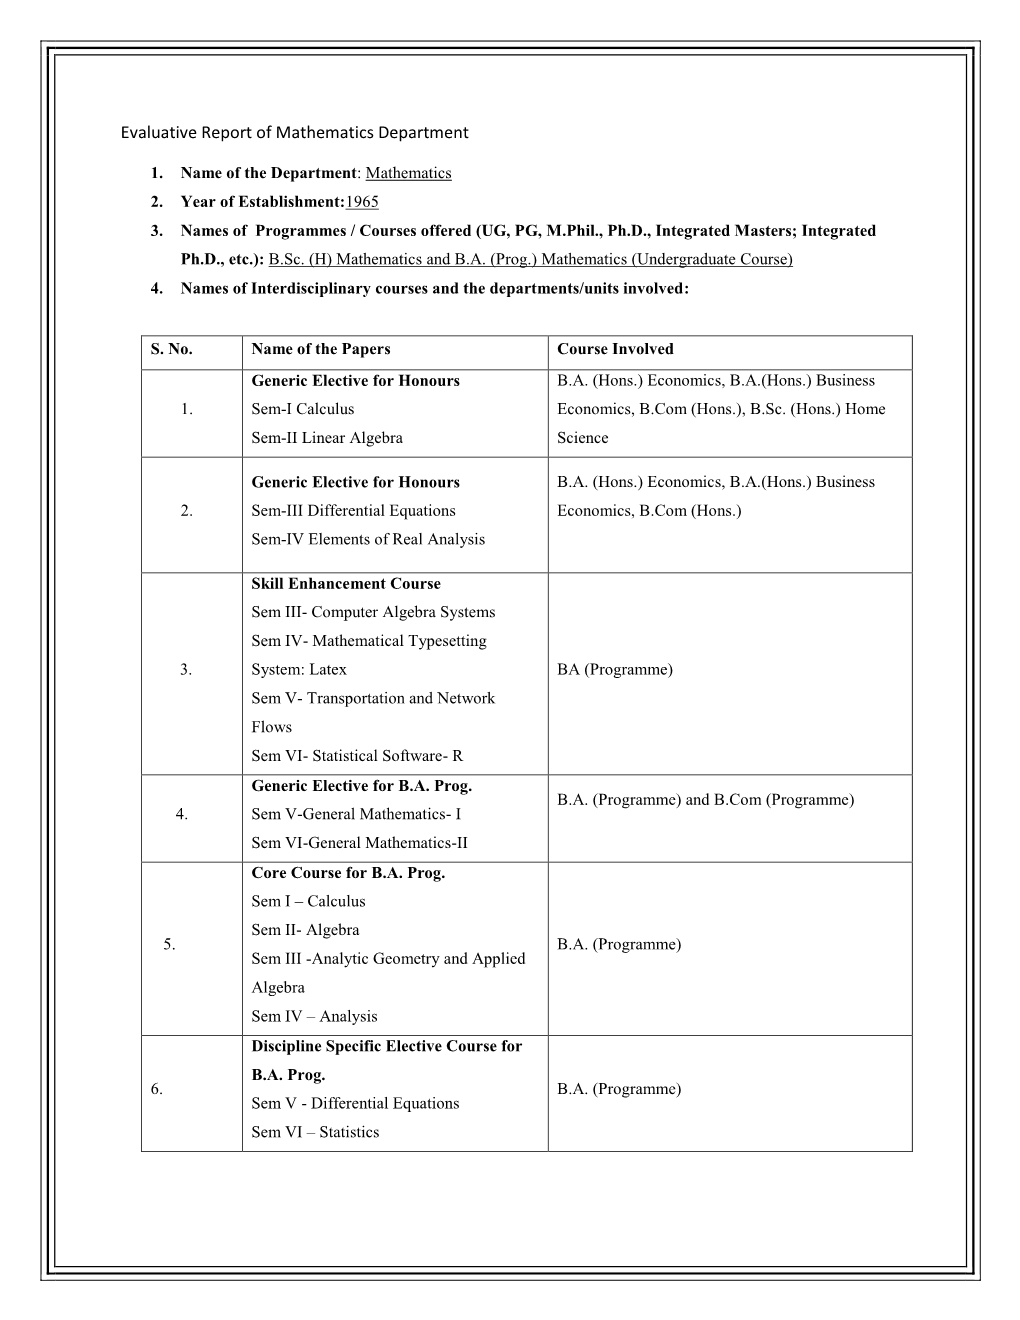 Evaluative Report of Mathematics Department